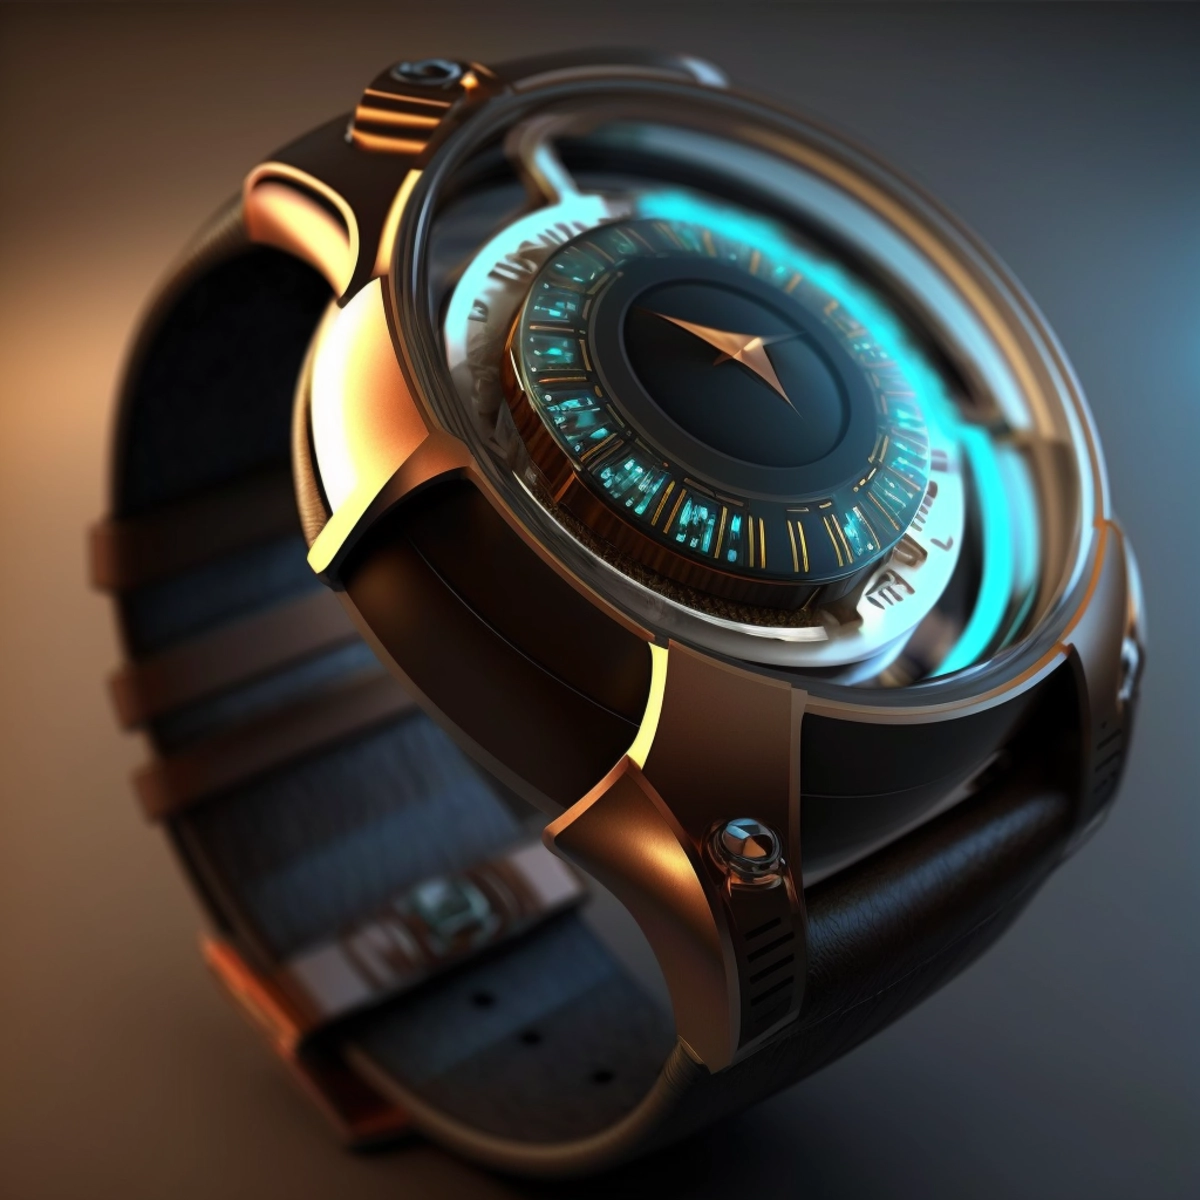 Un concept design futuristico di uno smartwatch con display olografico, che fonde eleganza e tecnologia all'avanguardia